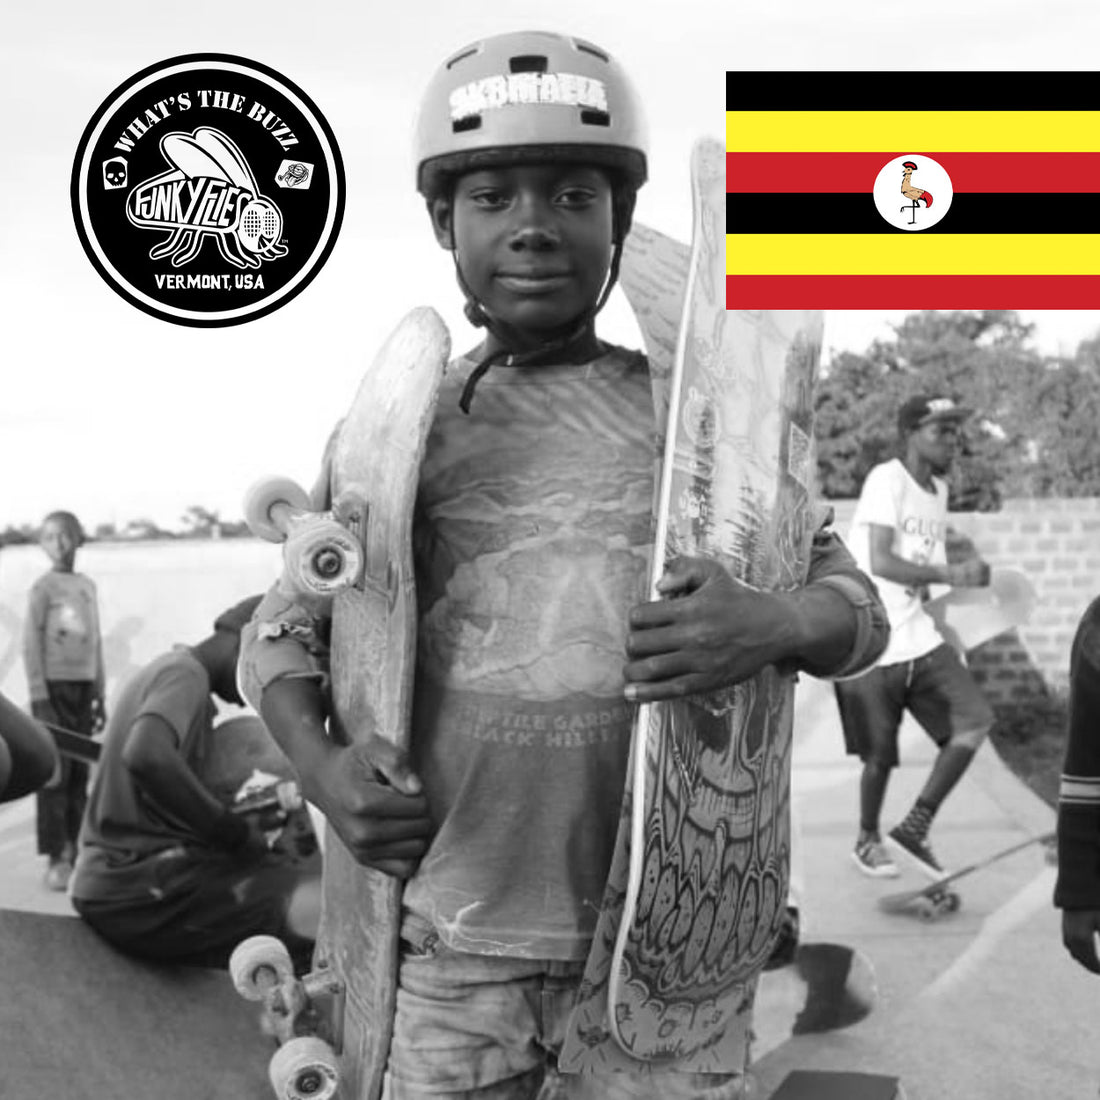 The Uganda SkateBoard Society